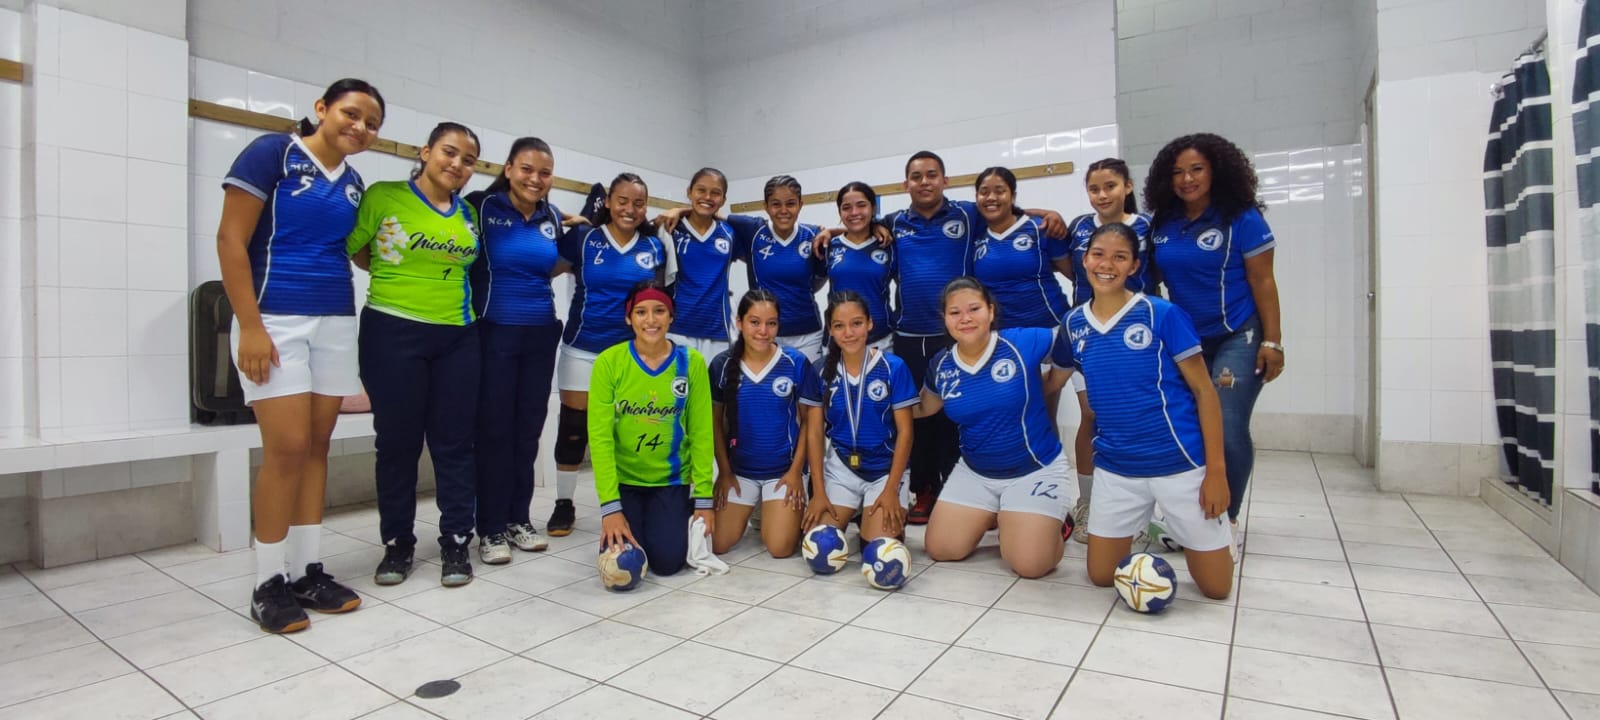 Nicaragua debuta con victoria en IHF Trophy Centroamericano en balonmano juvenil